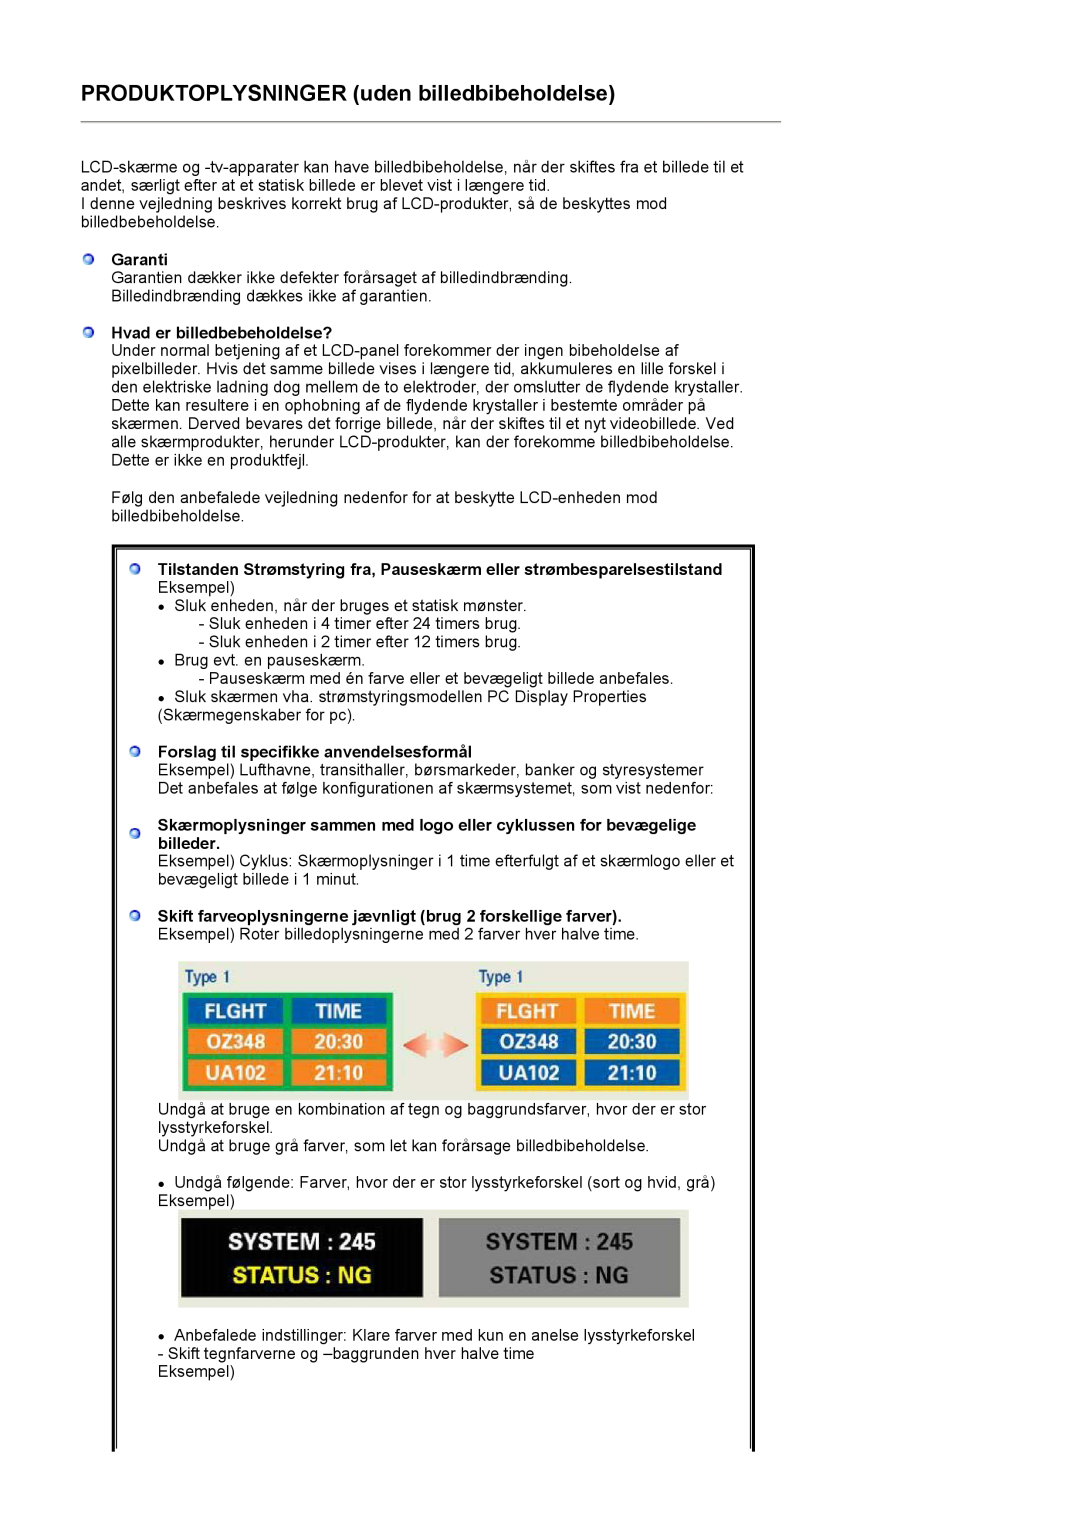 Samsung LS17MJVKS/EDC manual PRODUKTOPLYSNINGER uden billedbibeholdelse, Garanti, Hvad er billedbebeholdelse? 